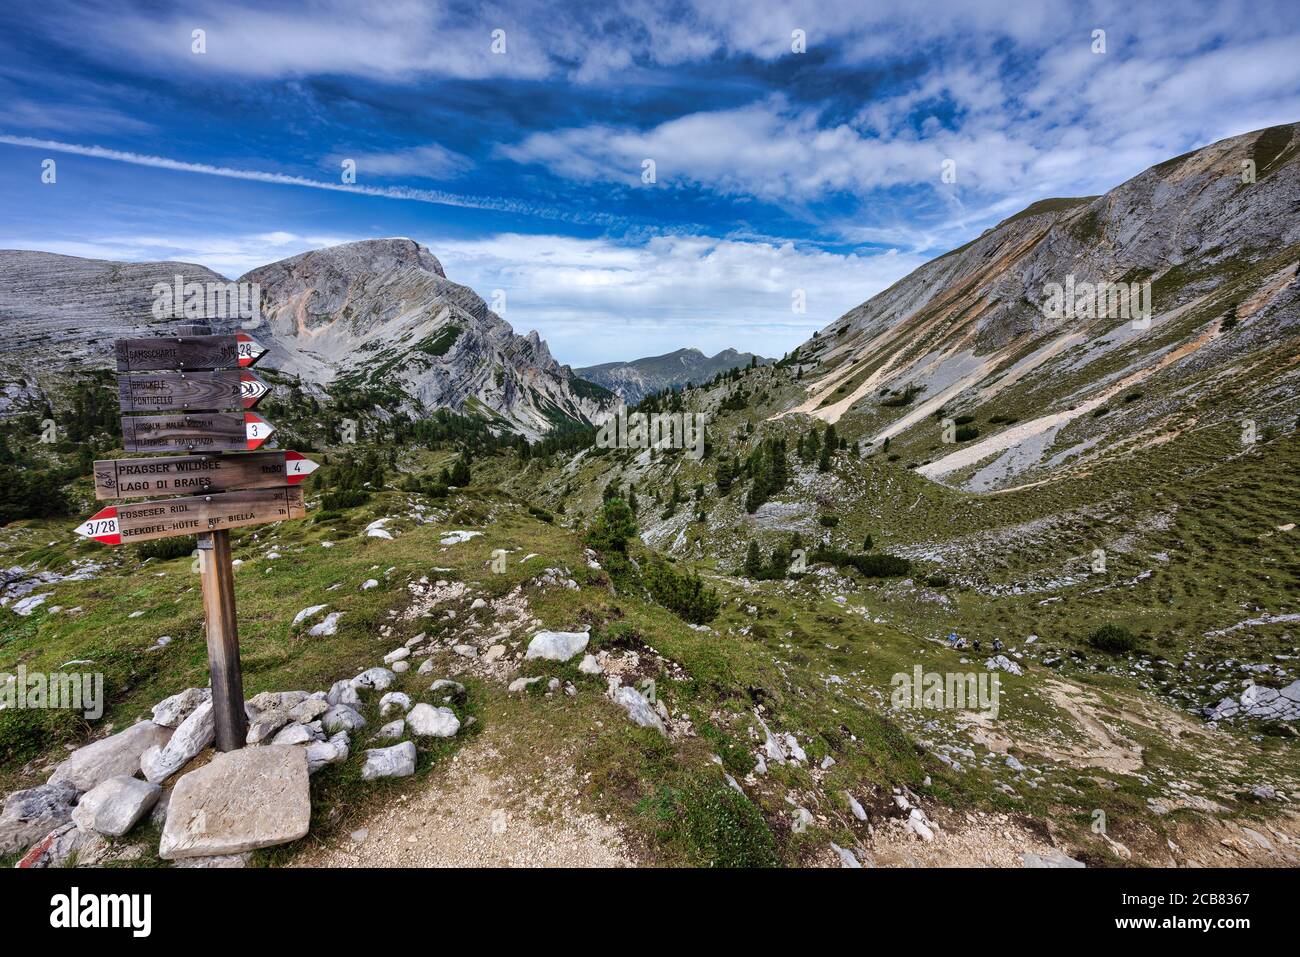 Cuatro excursionistas más allá de una señal de senderismo, Dolomitas, Parque Natural de Fanes-Sennes-Braies, Tirol del Sur, Italia Foto de stock